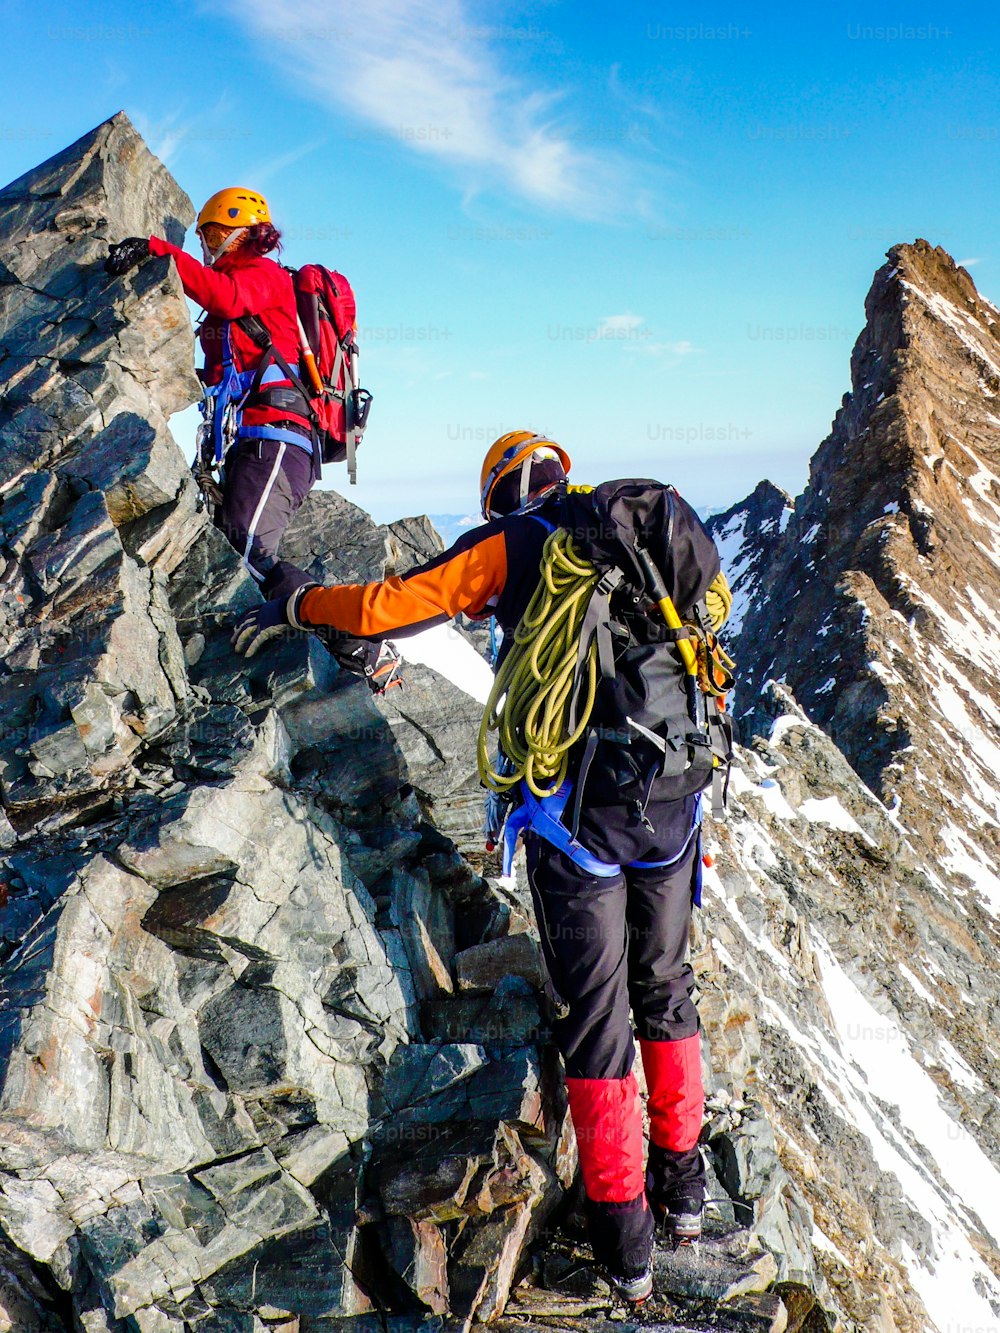 alpinista masculino y femenino en una cresta rocosa expuesta en su camino hacia un alto pico de montaña alpina cerca de Zermatt en los Alpes suizos